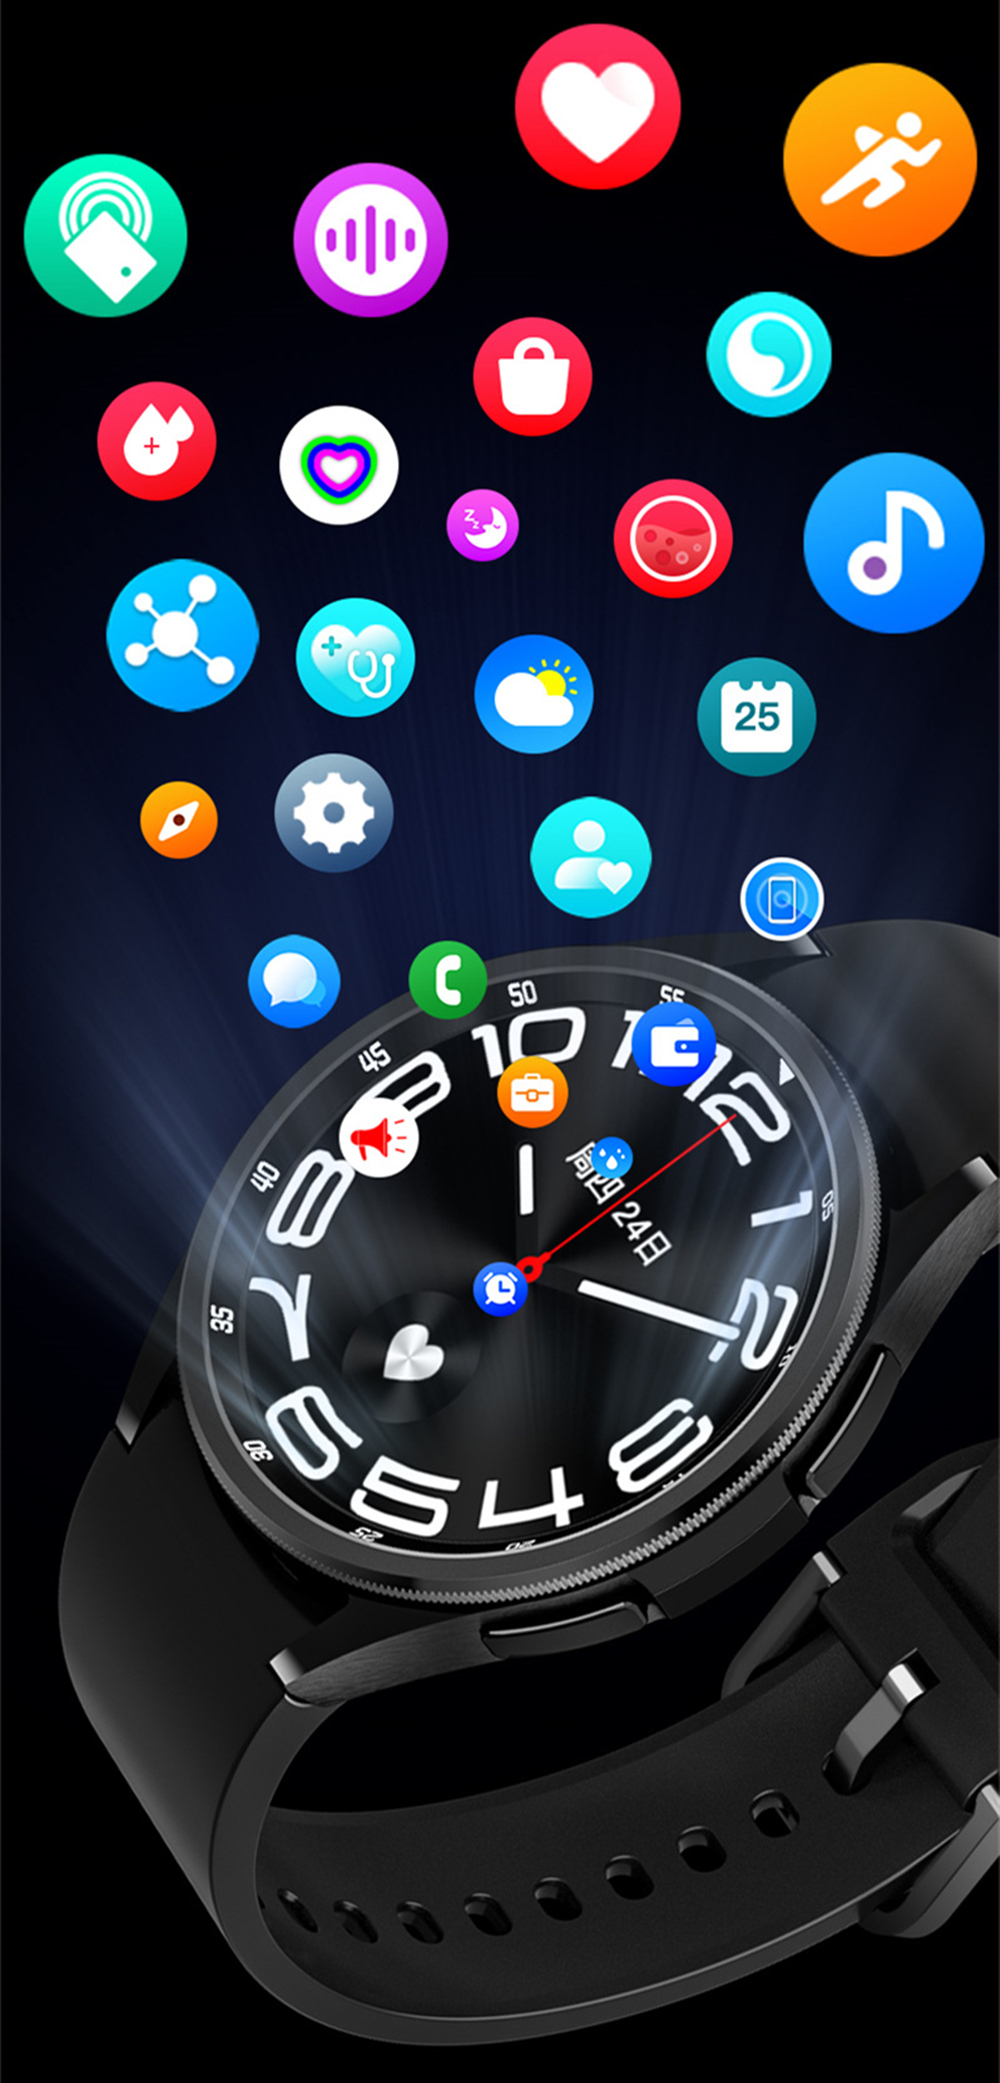 Smart Watch6 클래식 앱 Wearfit 1.52 인치 HD 화면 47mm Bluetooth는 스포츠 음악 무선 충전기 350mAh 배터리 IP68 모든 전화 용 방수입니다.